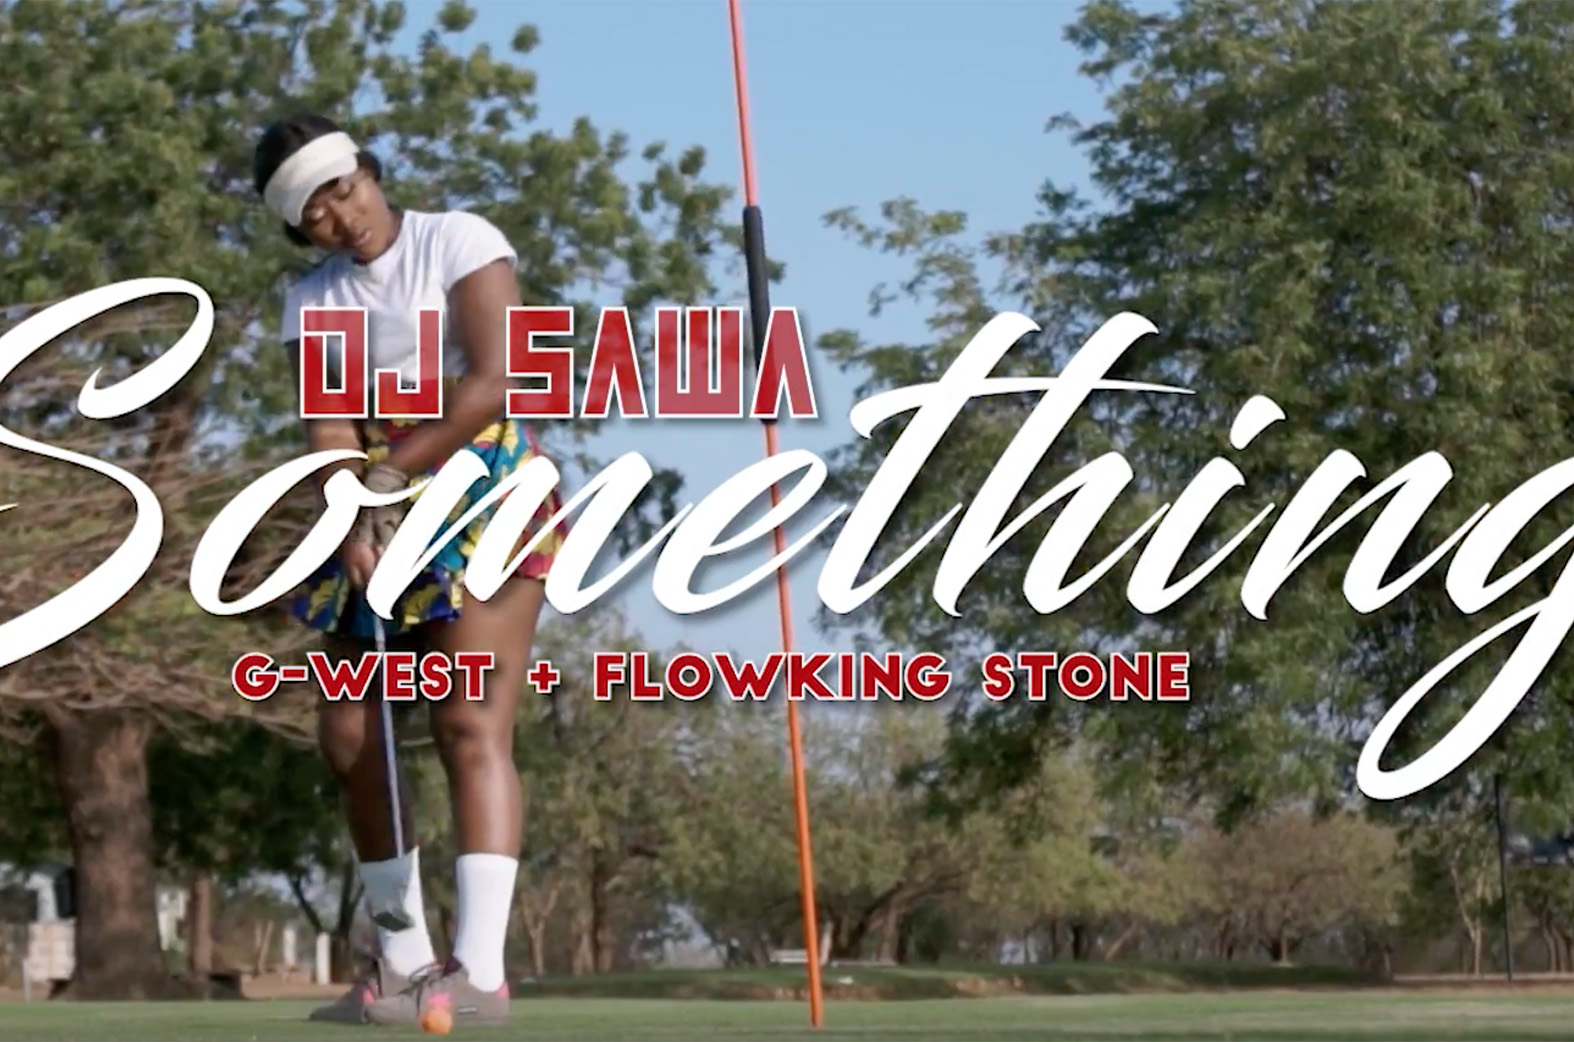 Something by DJ SAWA feat. G-West & Flowking Stone